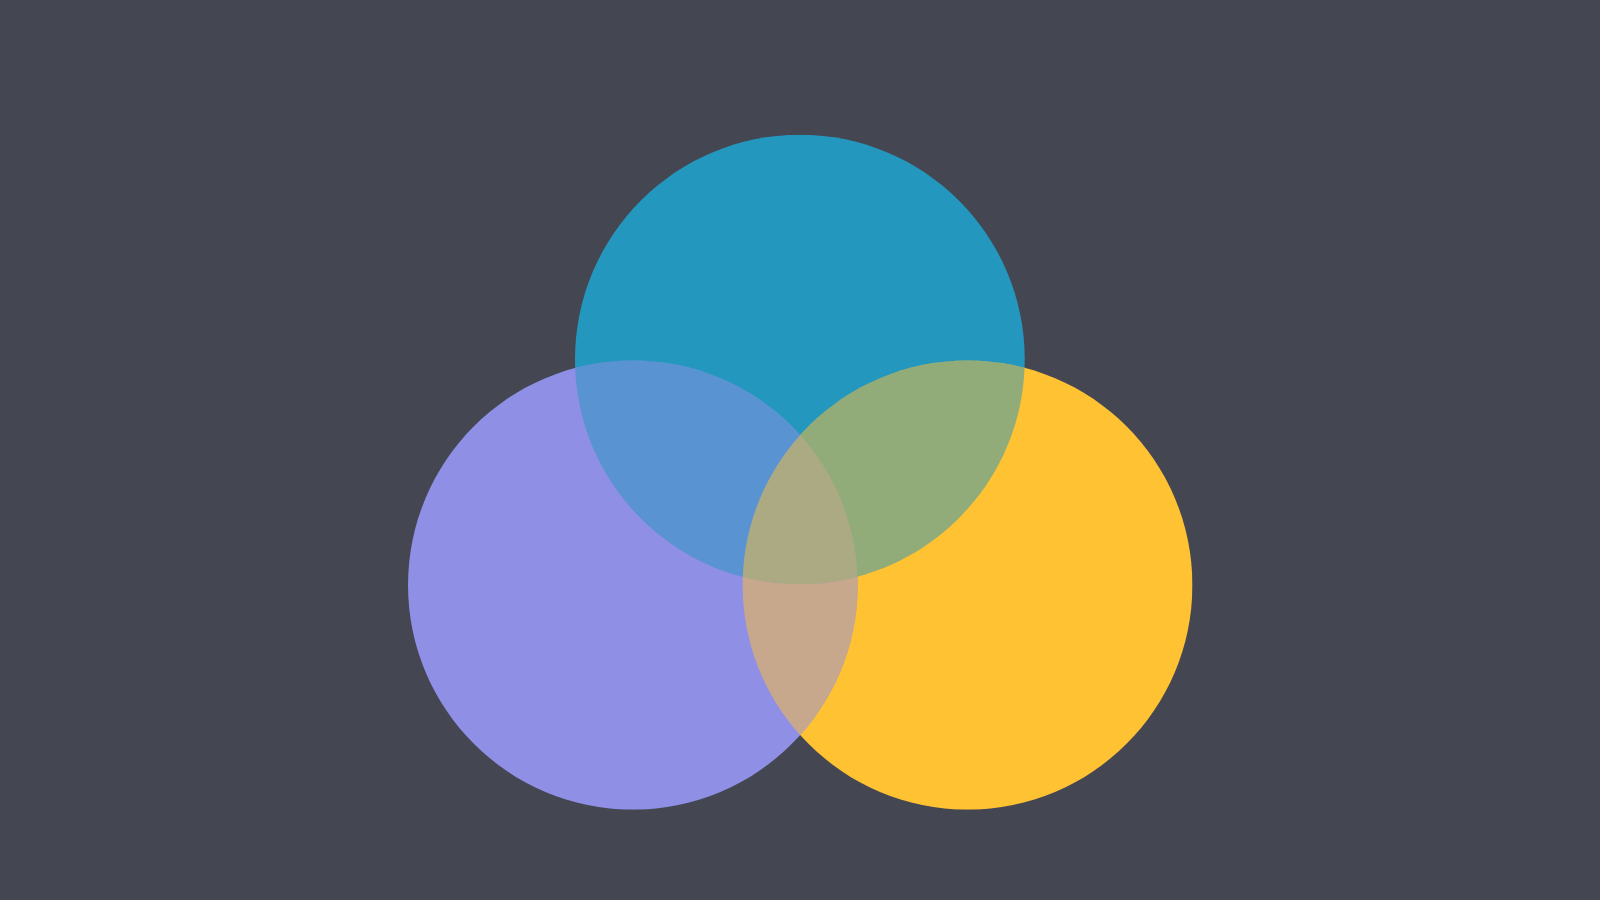 A Venn diagram with three circles